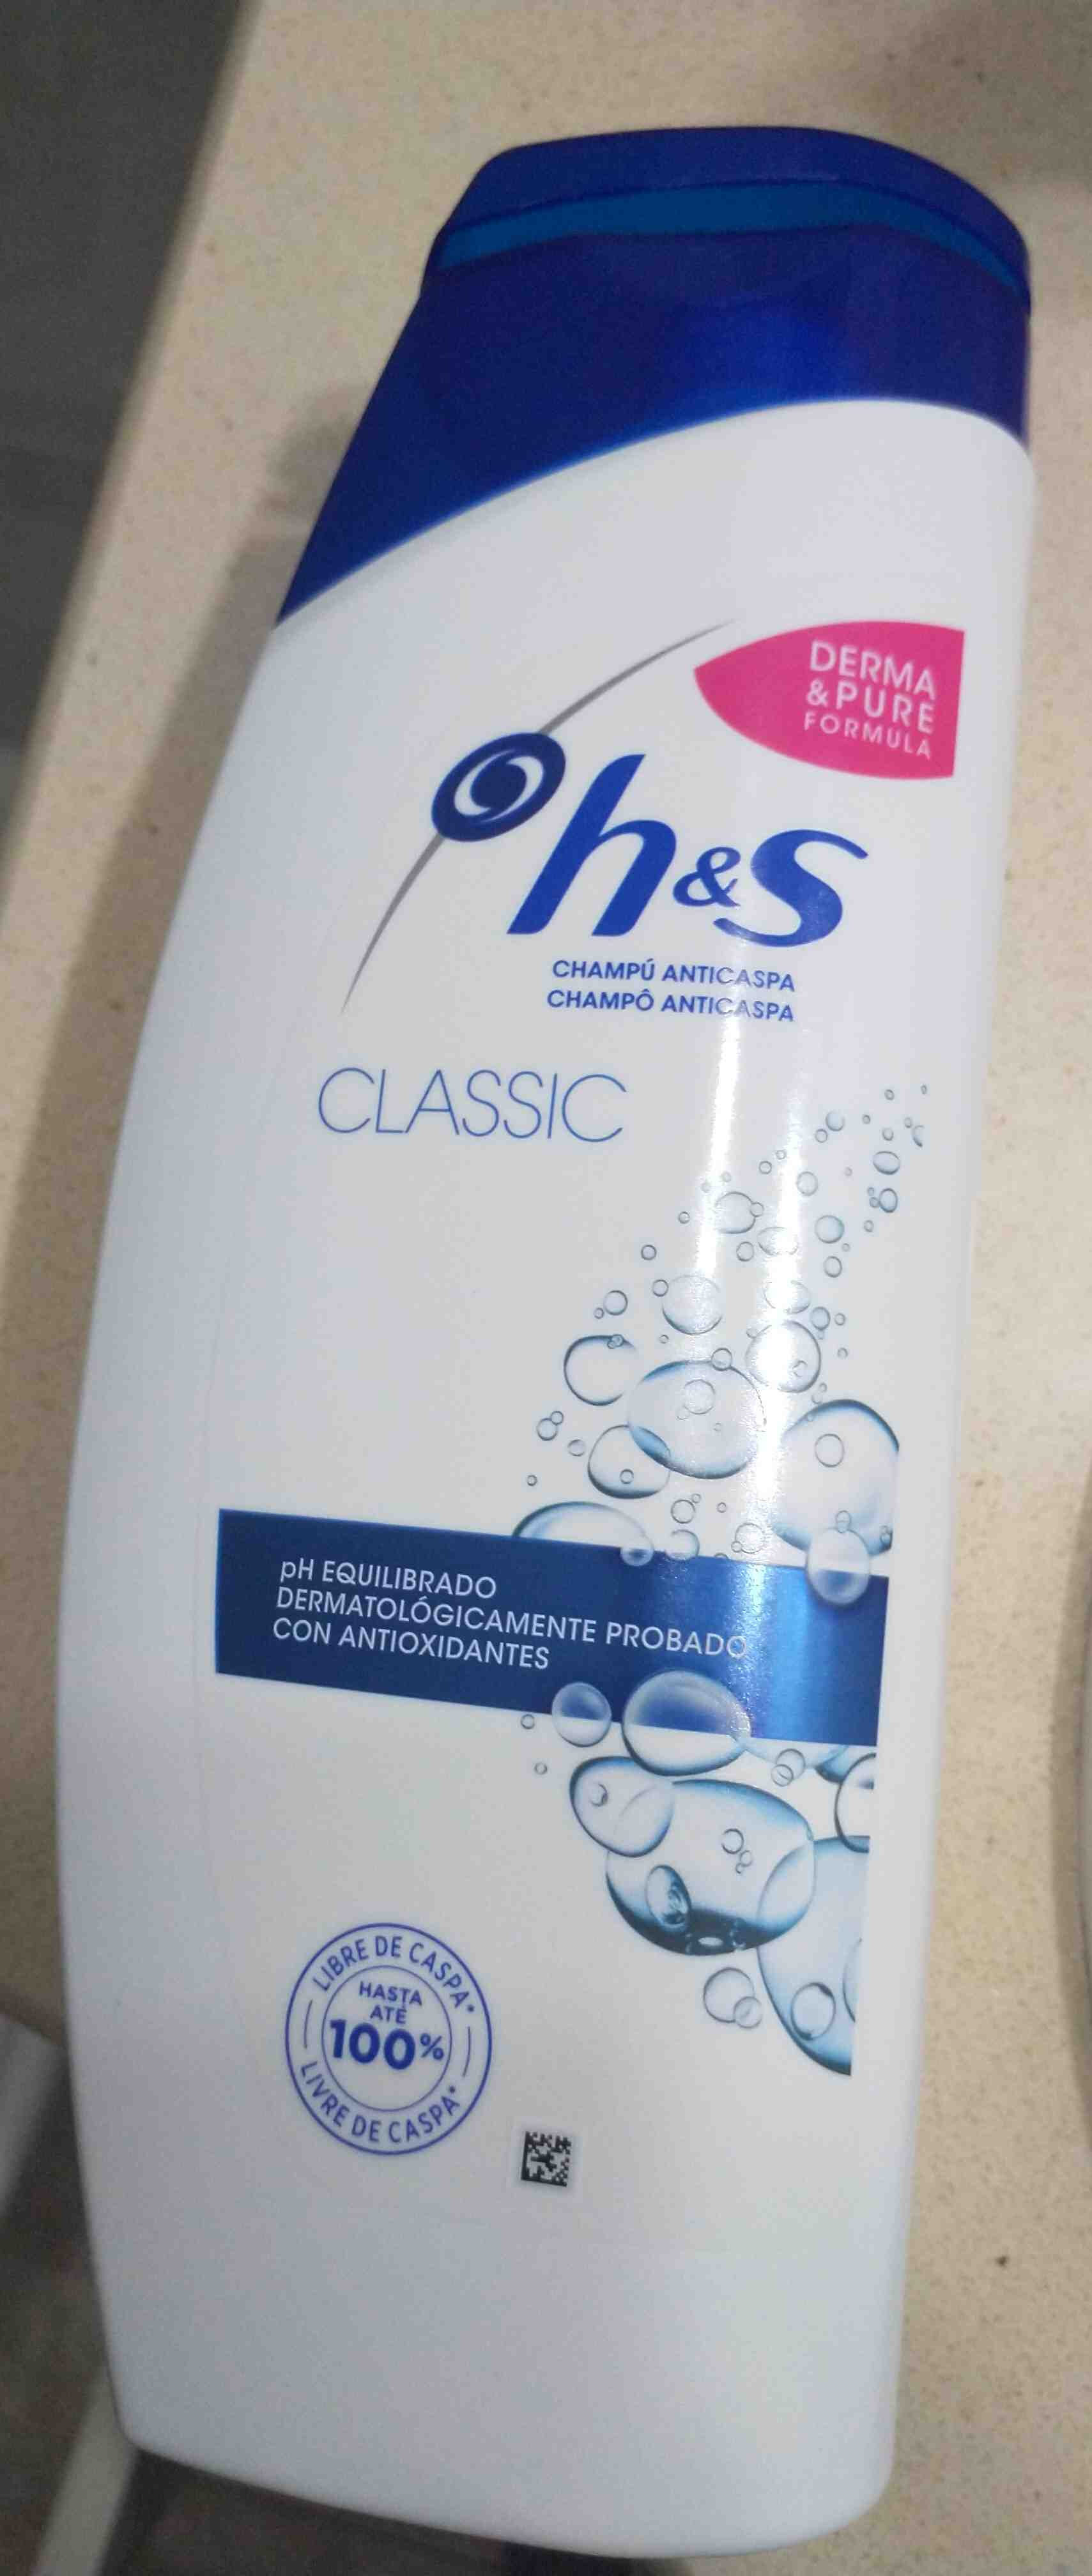 h&s Classic - Product - en